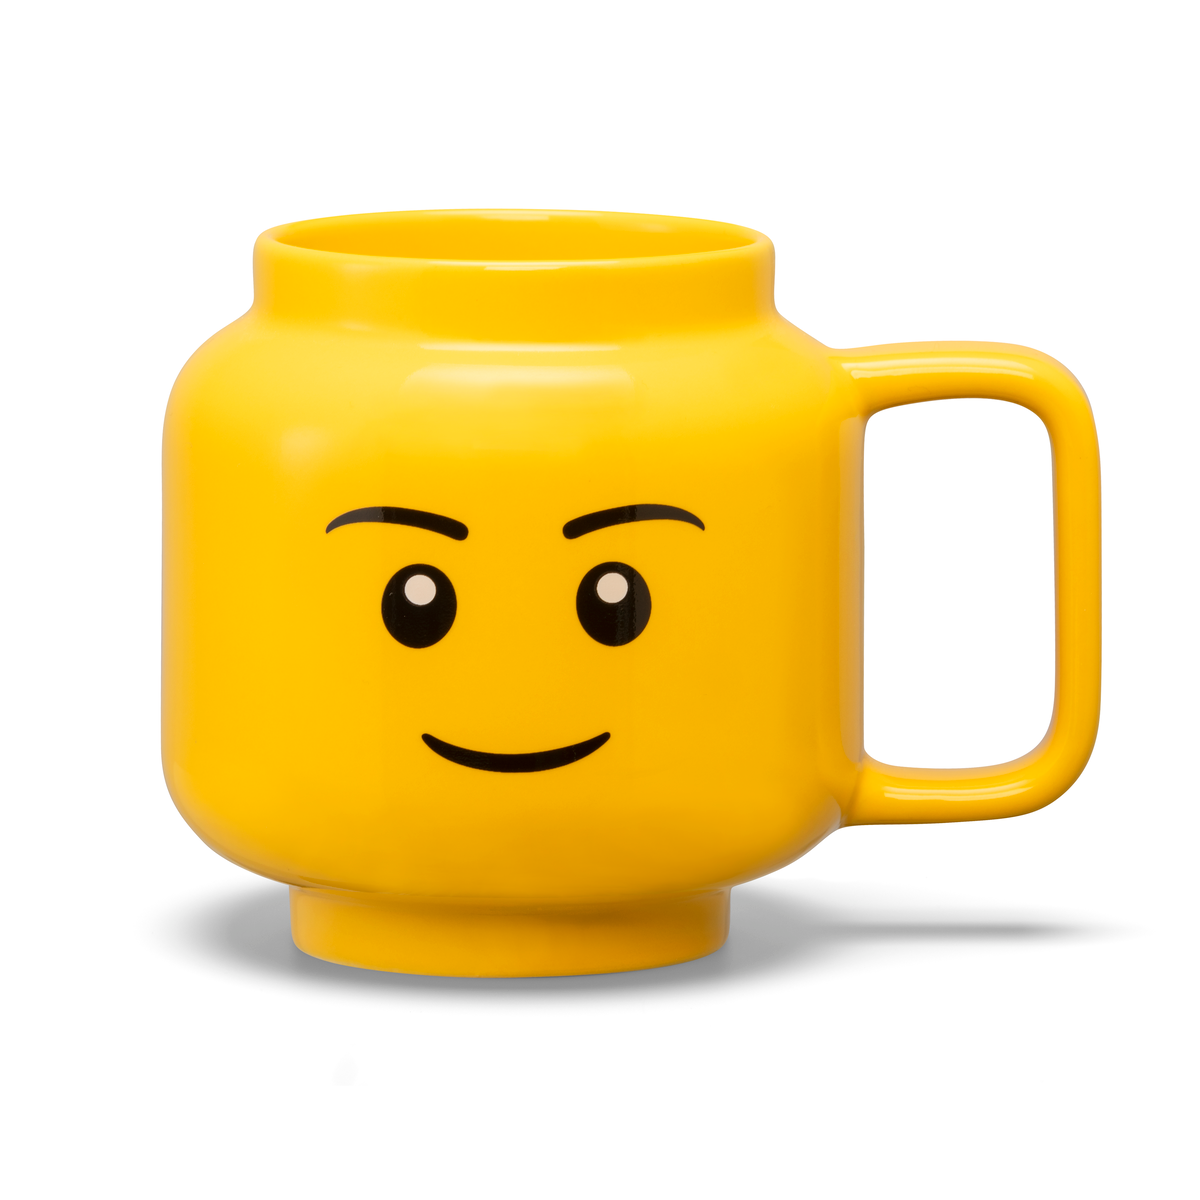 LEGO - Taza de Ceramica Grande Original, Color Amarillo, 530 mL